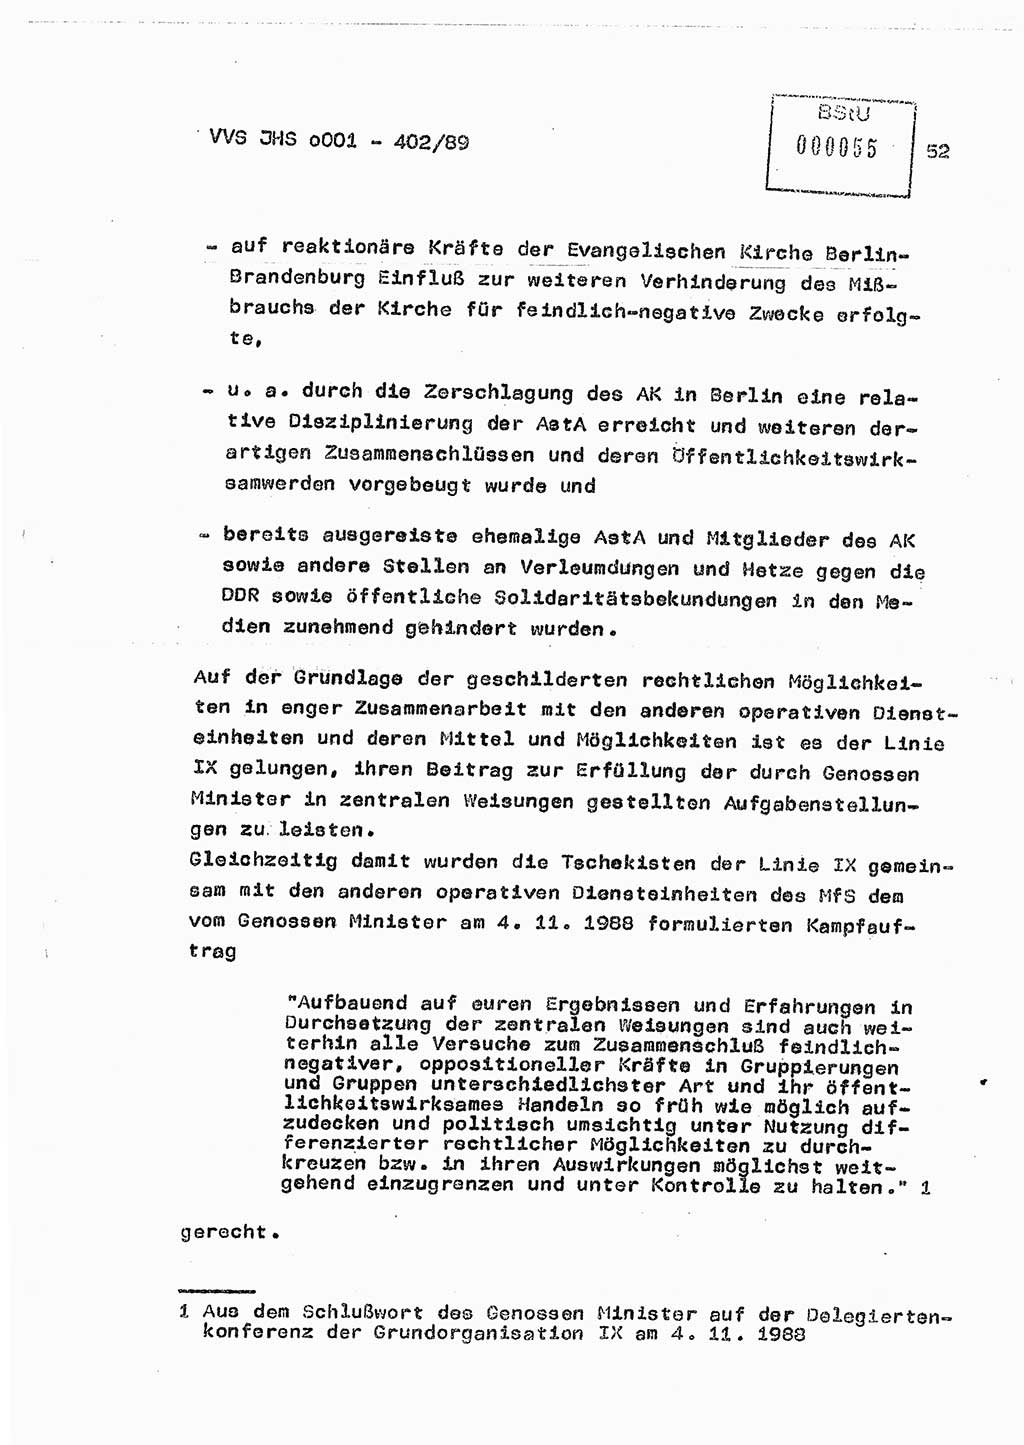 Diplomarbeit Major Günter Müller (HA Ⅸ/9), Ministerium für Staatssicherheit (MfS) [Deutsche Demokratische Republik (DDR)], Juristische Hochschule (JHS), Vertrauliche Verschlußsache (VVS) o001-402/89, Potsdam 1989, Seite 52 (Dipl.-Arb. MfS DDR JHS VVS o001-402/89 1989, S. 52)